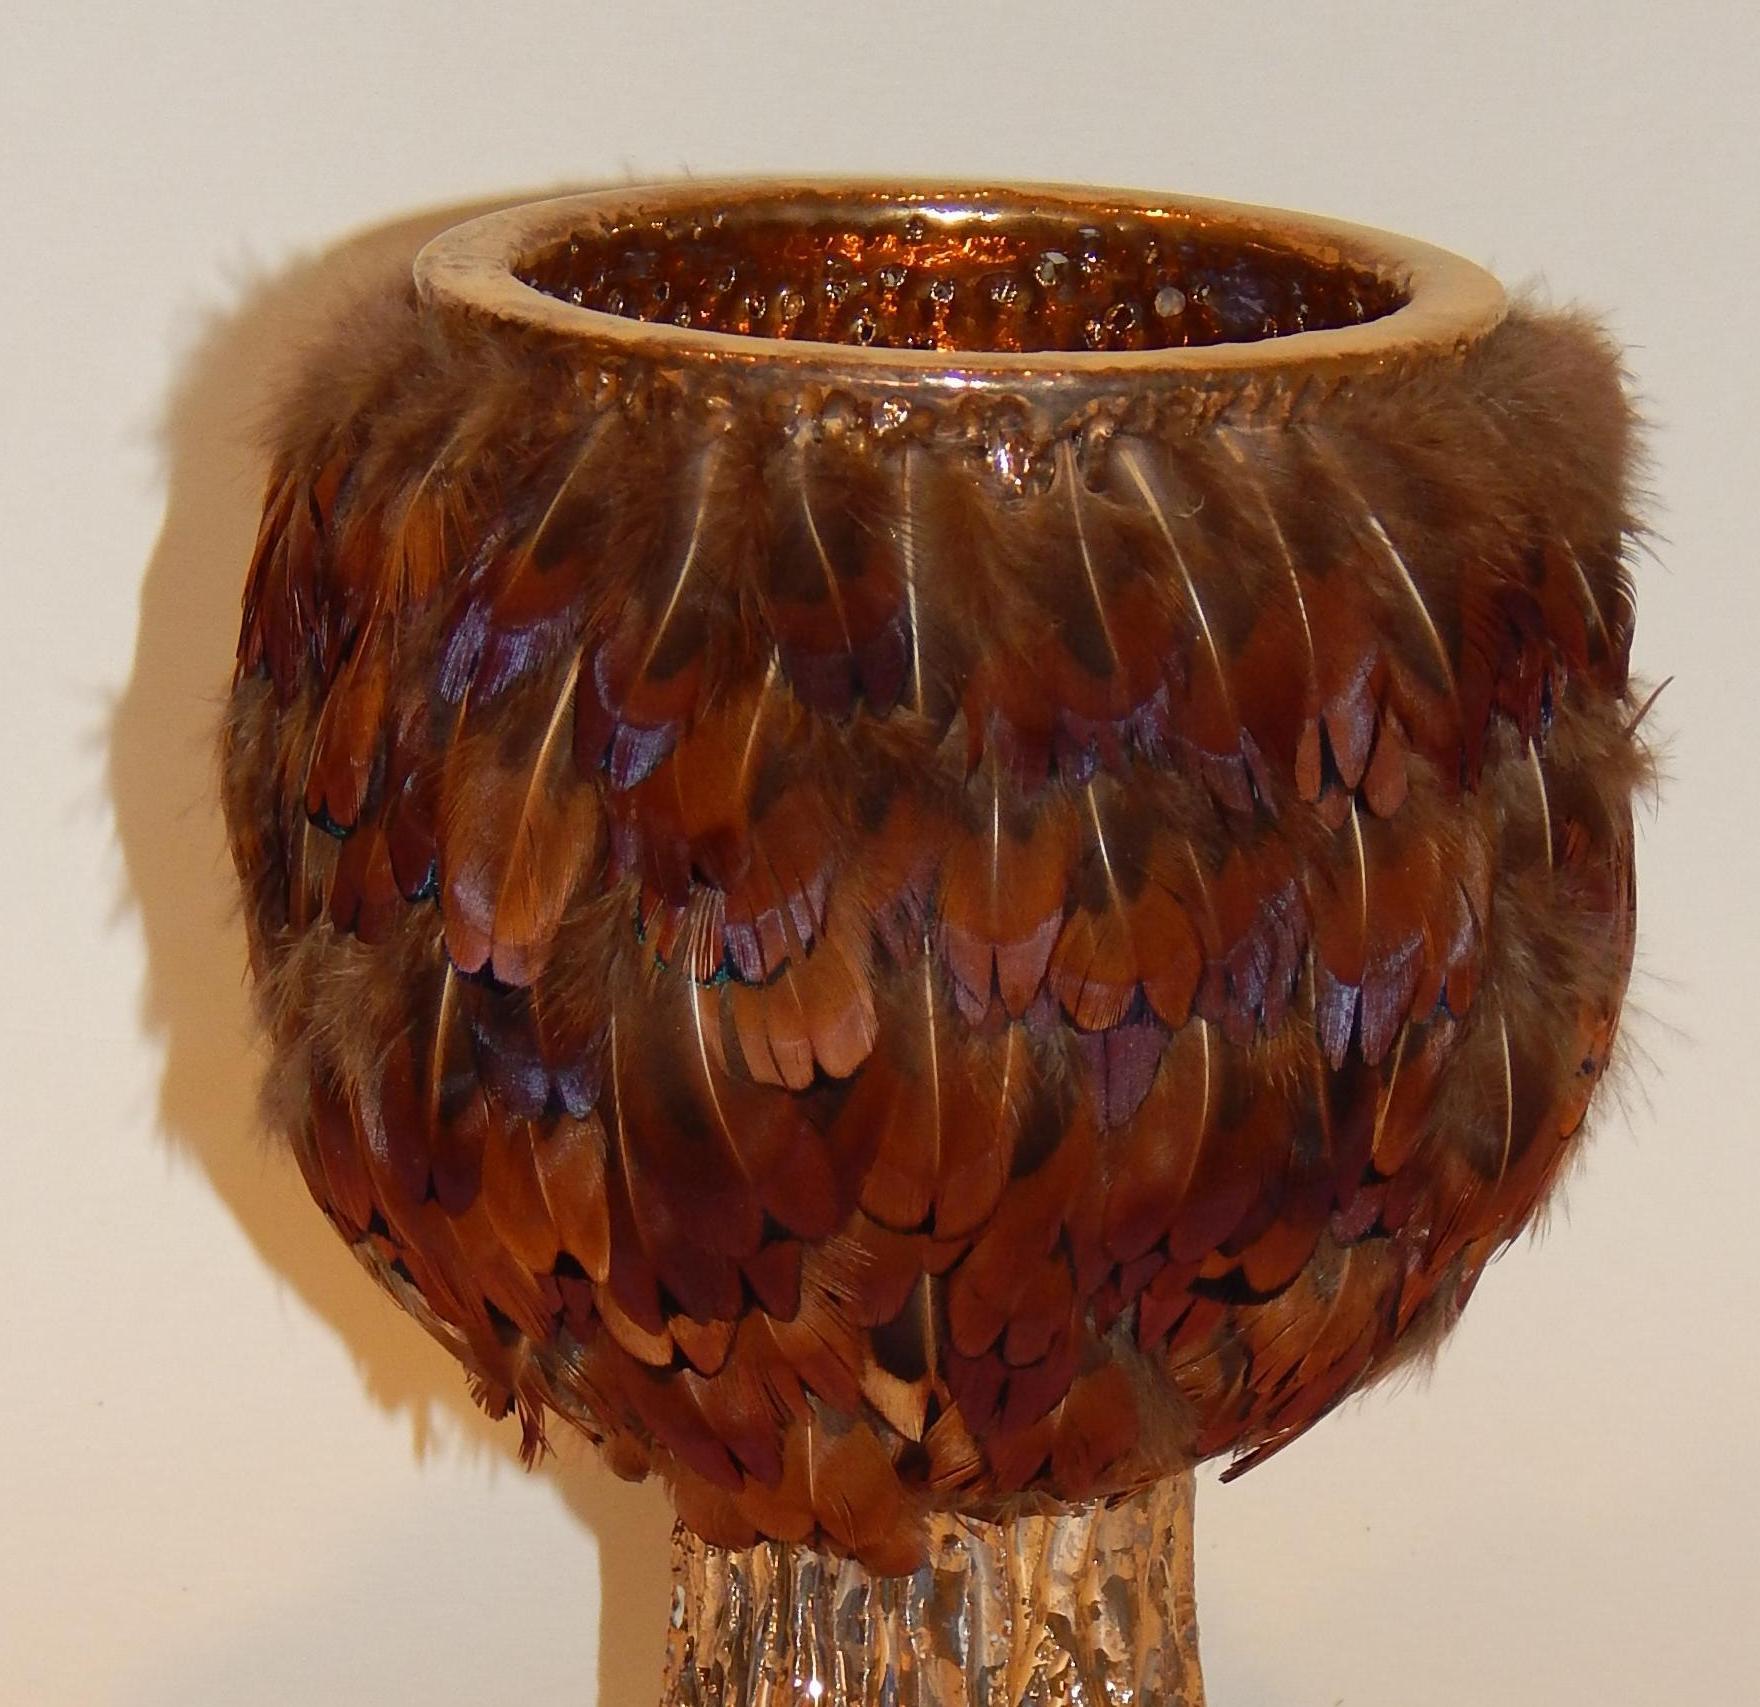 Poterie d'art Ken Shores Pot fétiche en forme de calice avec plumes appliquées.
Ce magnifique vase en céramique porte un glaçage irisé or avec des plumes appliquées.
Présente dans une boîte en plexiglas. Excellent état, sans aucun